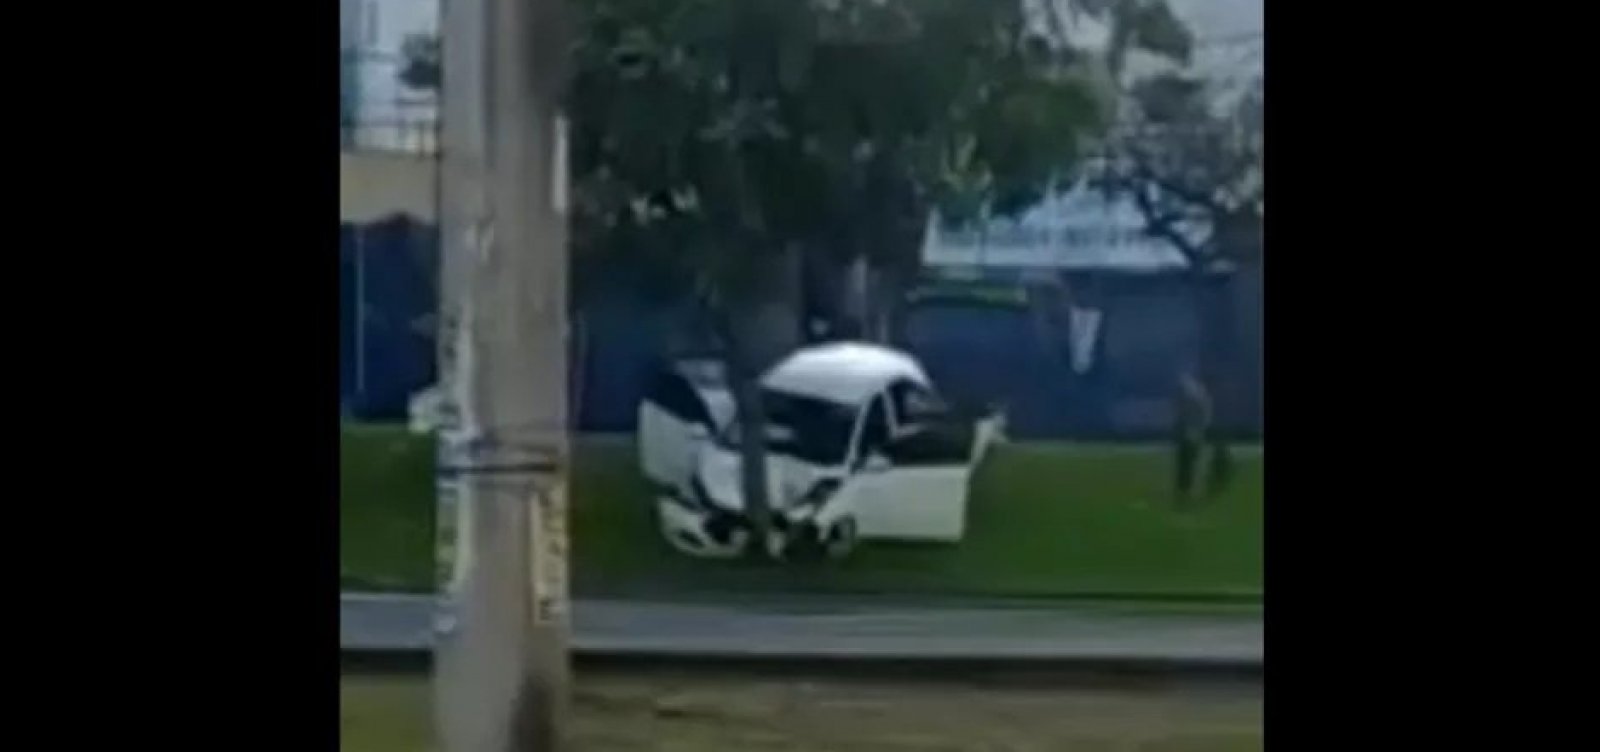 Três pessoas ficam feridas após carro bater em árvore em Salvador